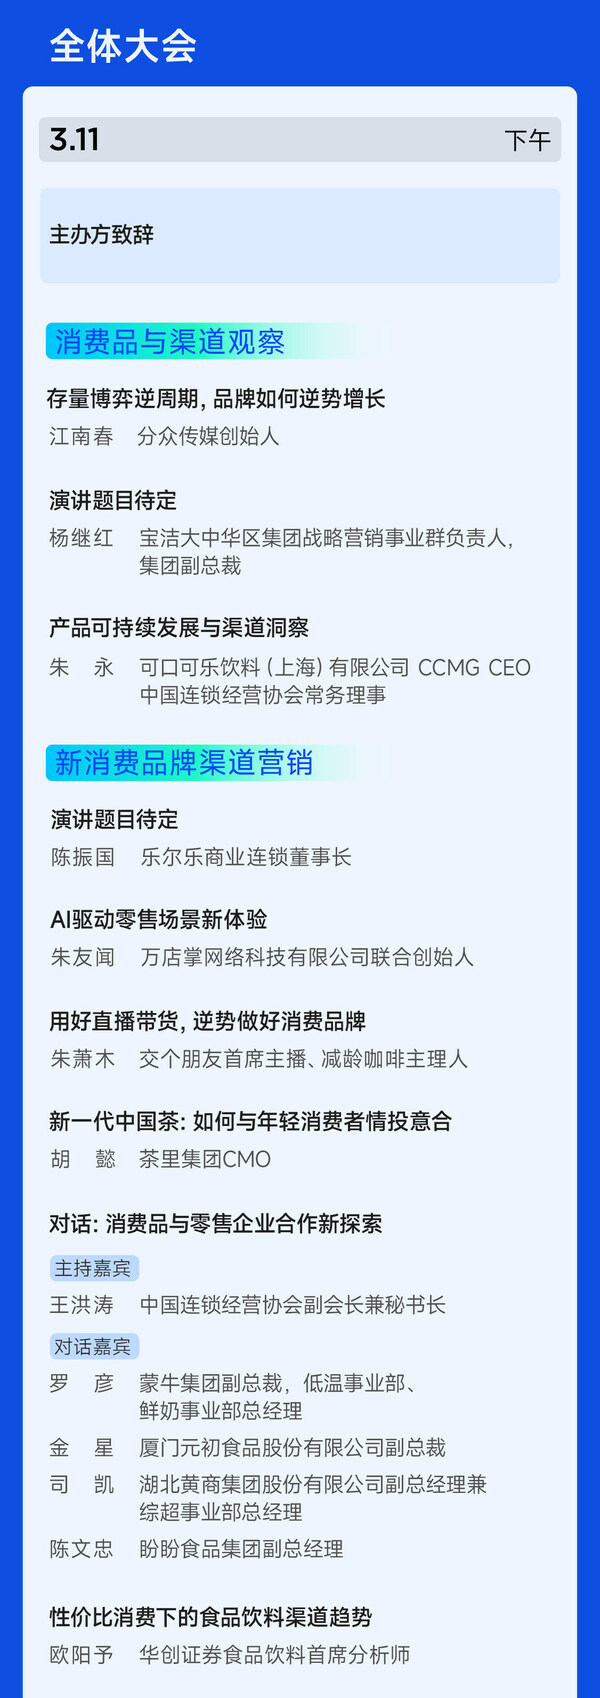 日程公布 消费品渠道营销创新峰会3月11-12日上海召开图2